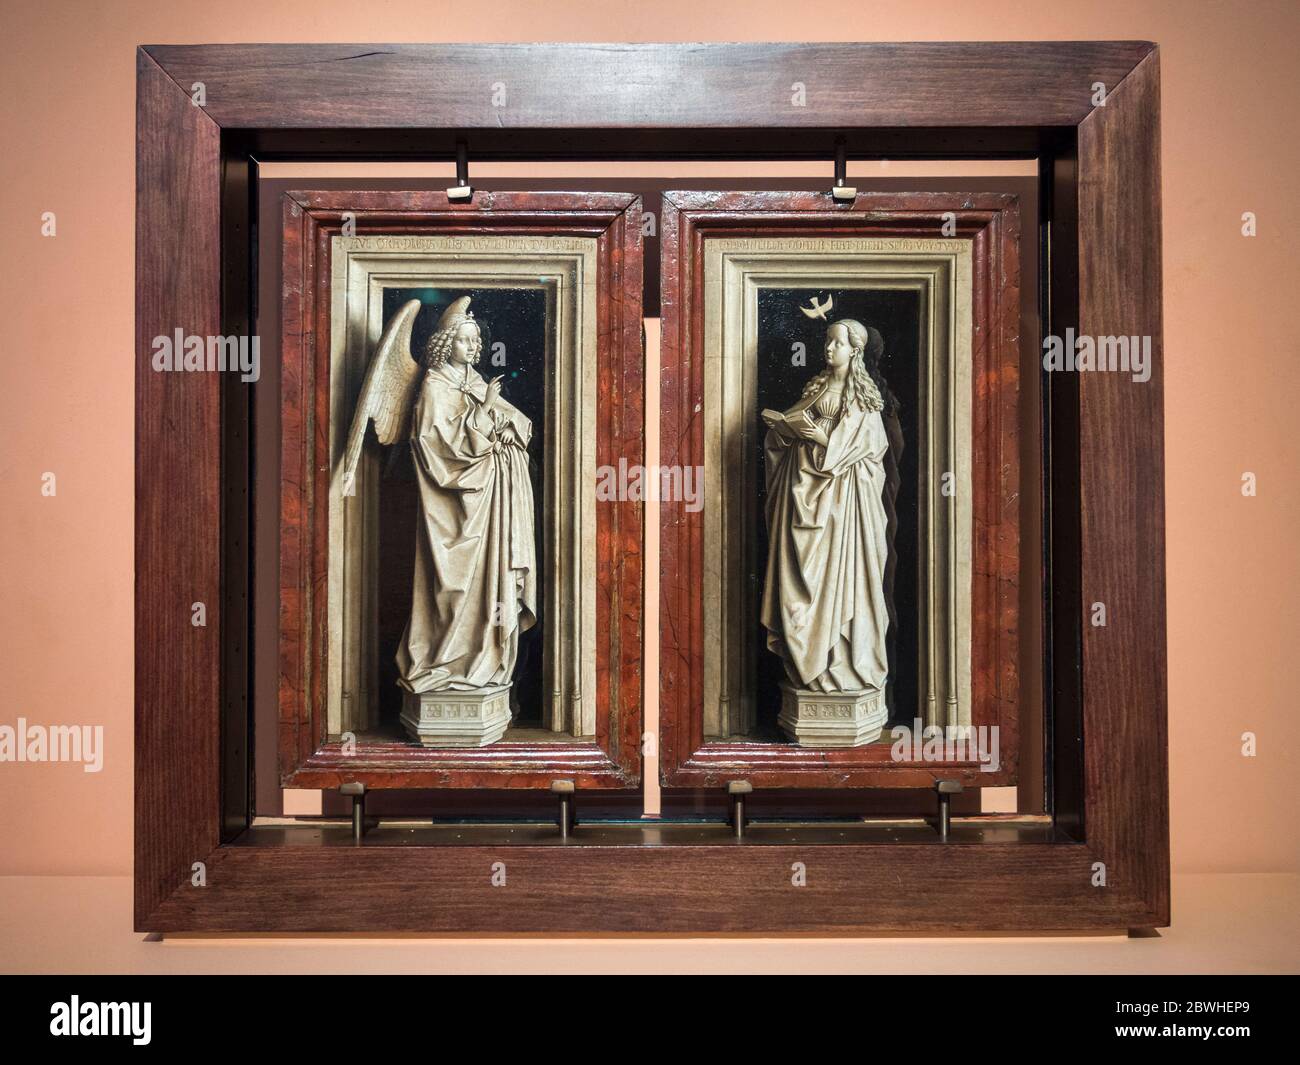 Díptico de la anunciación. Jan van Eyck. Museo Nacional Thyssen-Bornemisza. Madrid. España Stock Photo